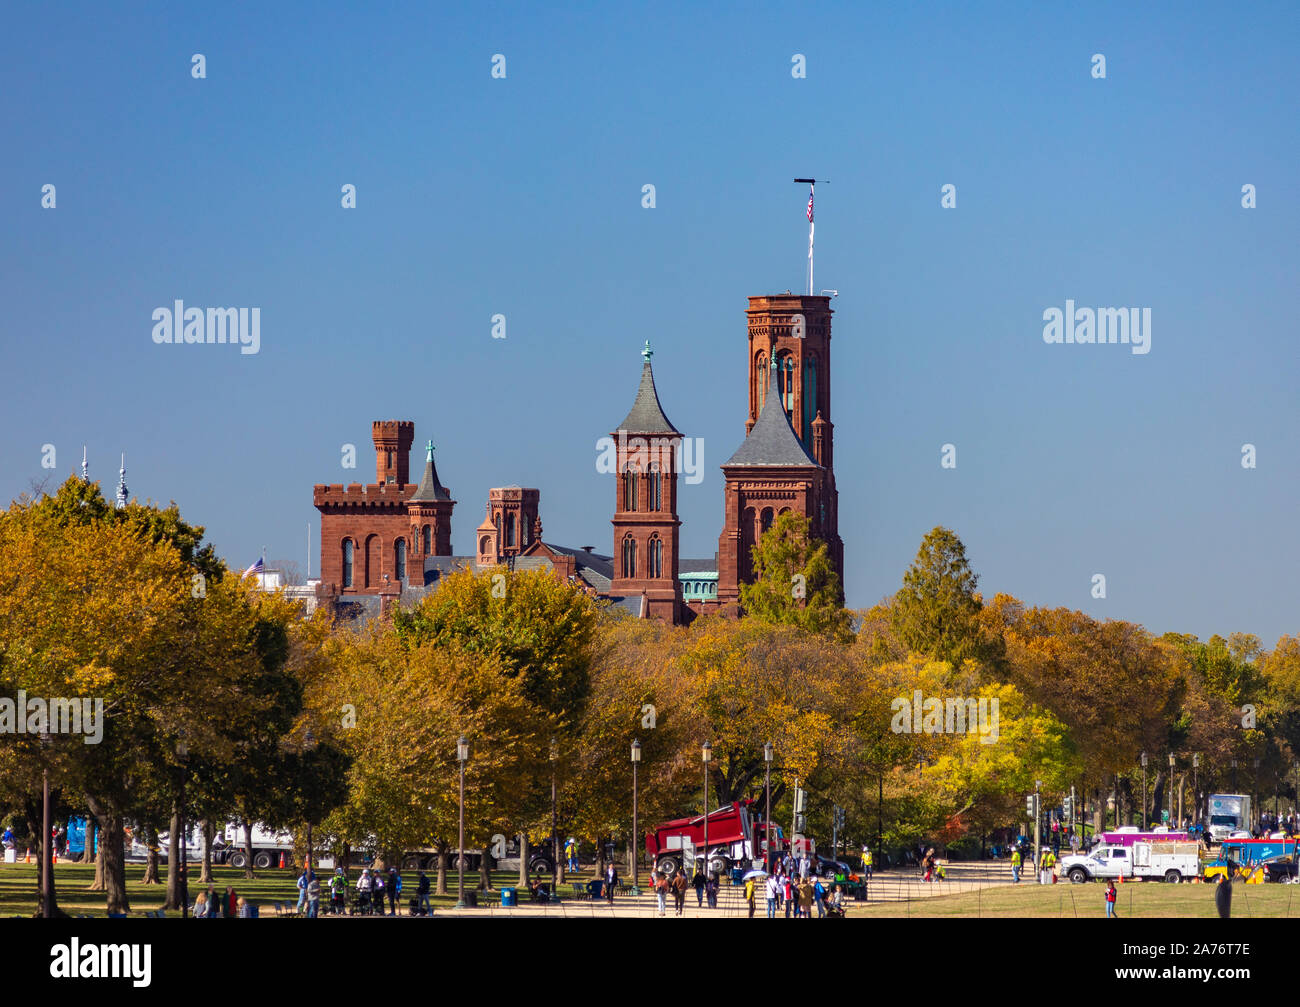 WASHINGTON, DC, USA - Smithsonian Institution Building, le château. Banque D'Images